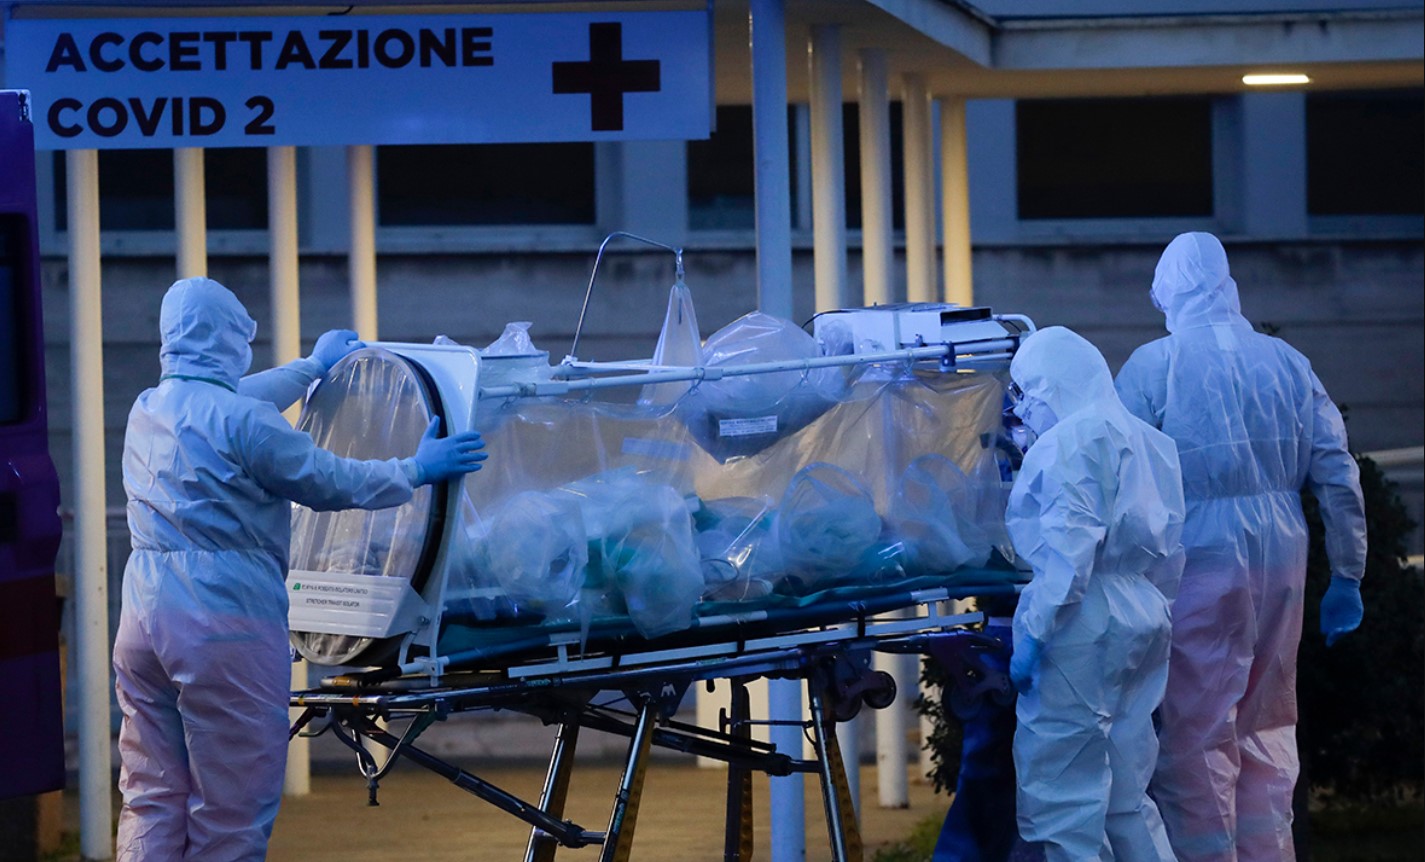 Китайские медики предупредили, что Европа повторяет их ошибки в борьбе с коронавирусом